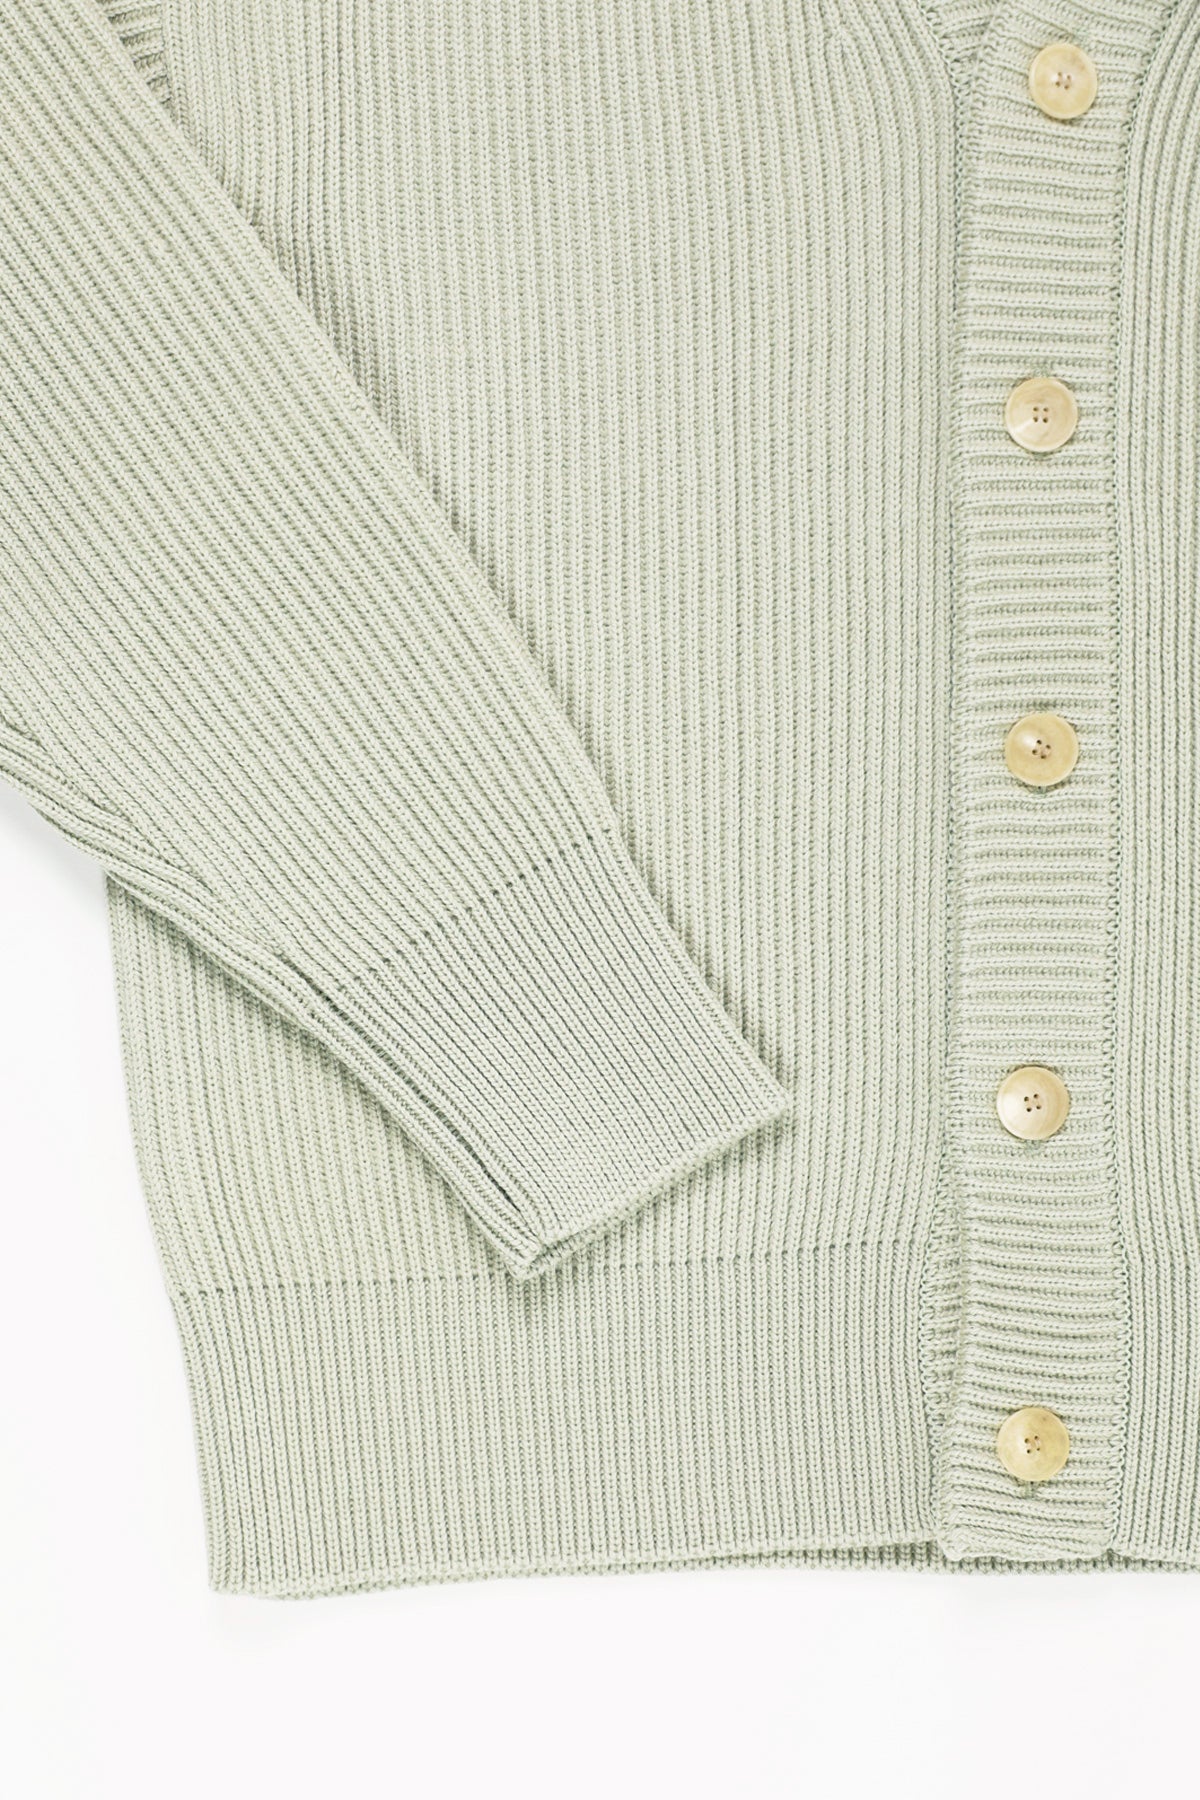 French Merino Rib Knit Cardigan - Light Khaki